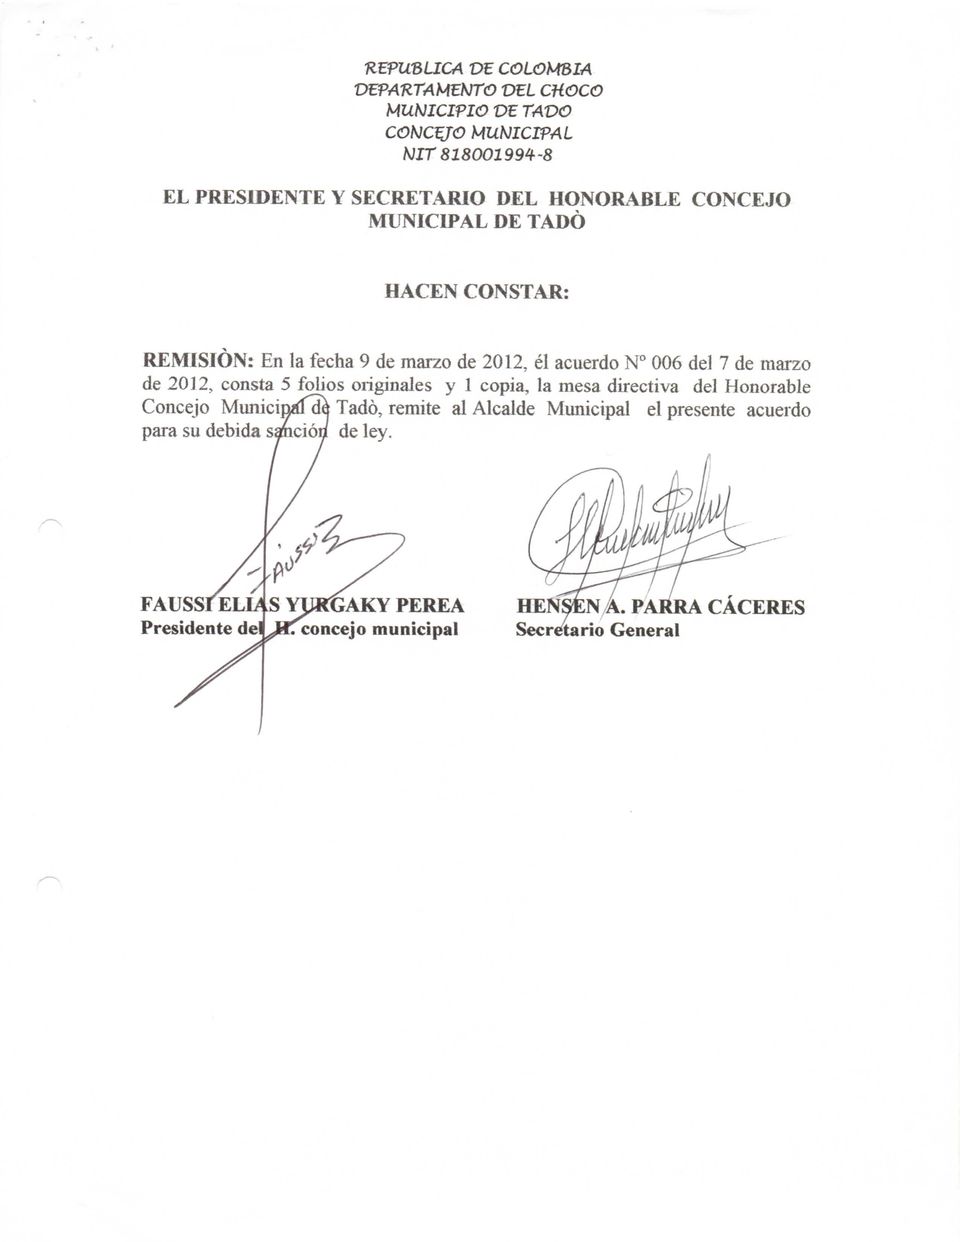 copia, la mesa directiva del Honorable Concejo MiuiicináTde Tadó, remite al Alcalde Municipal el presente acuerdo para su